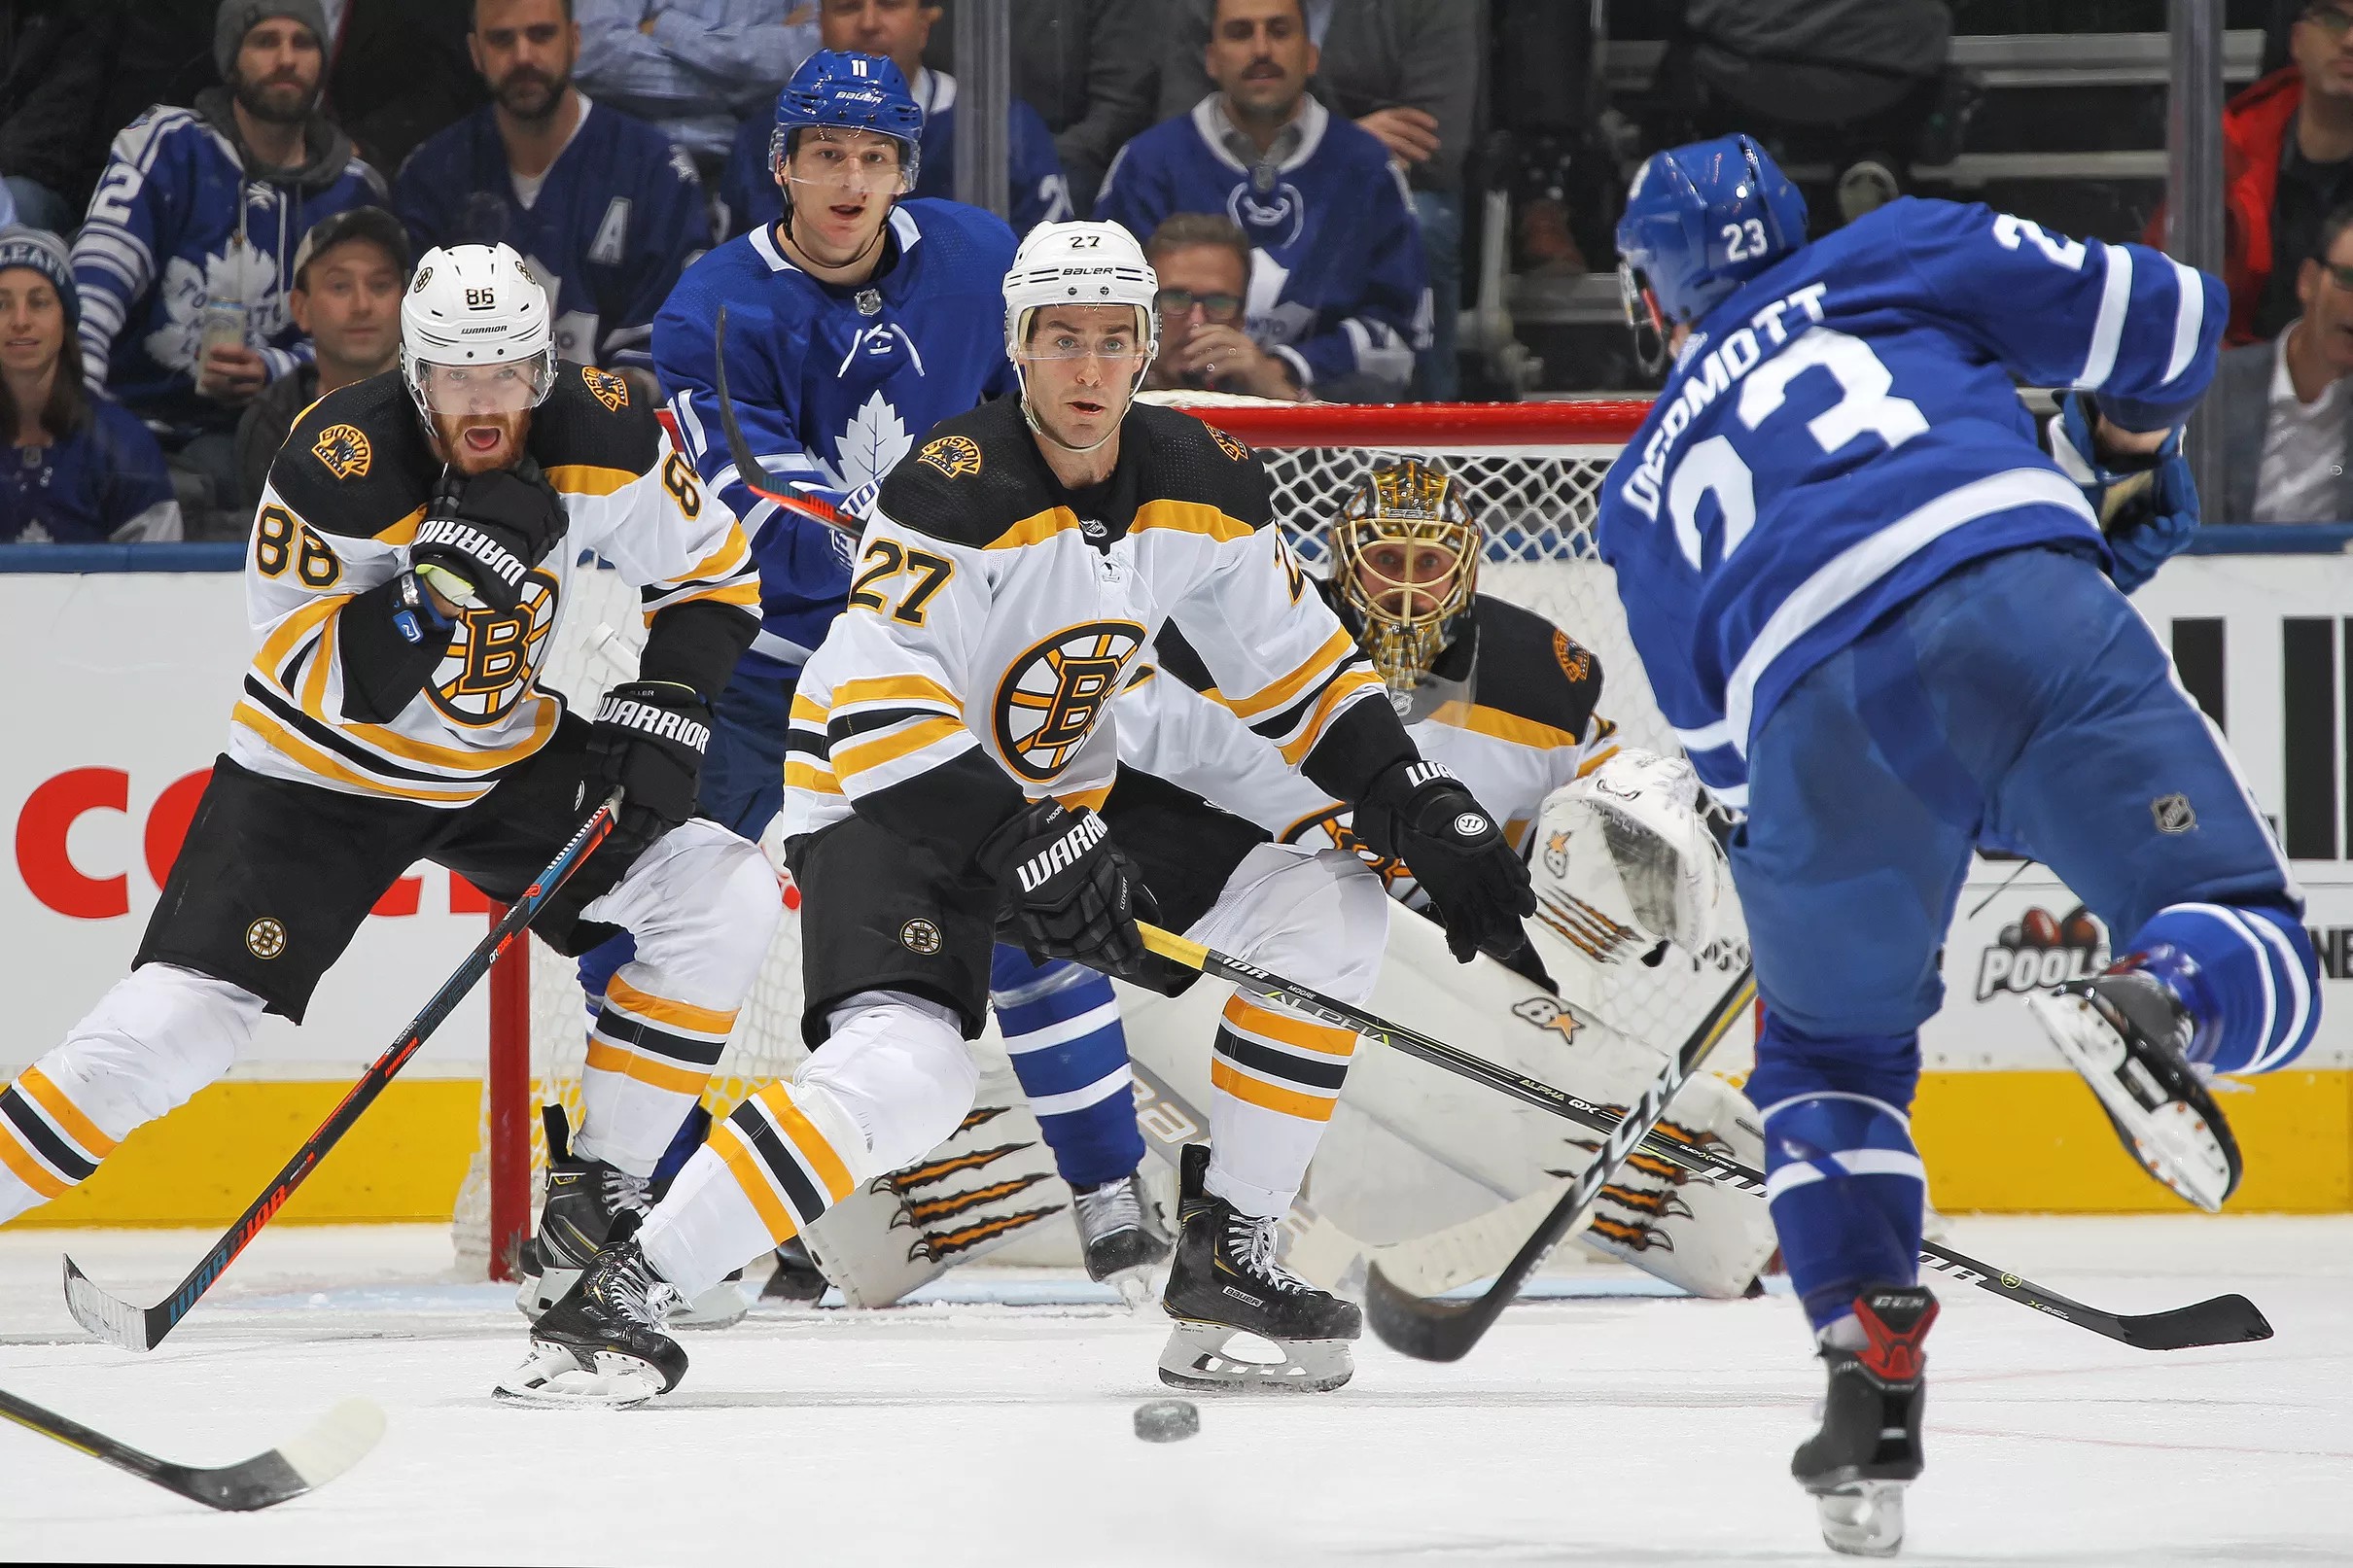 Toronto Maple Leafs playoff schedule: Round one vs Boston Bruins